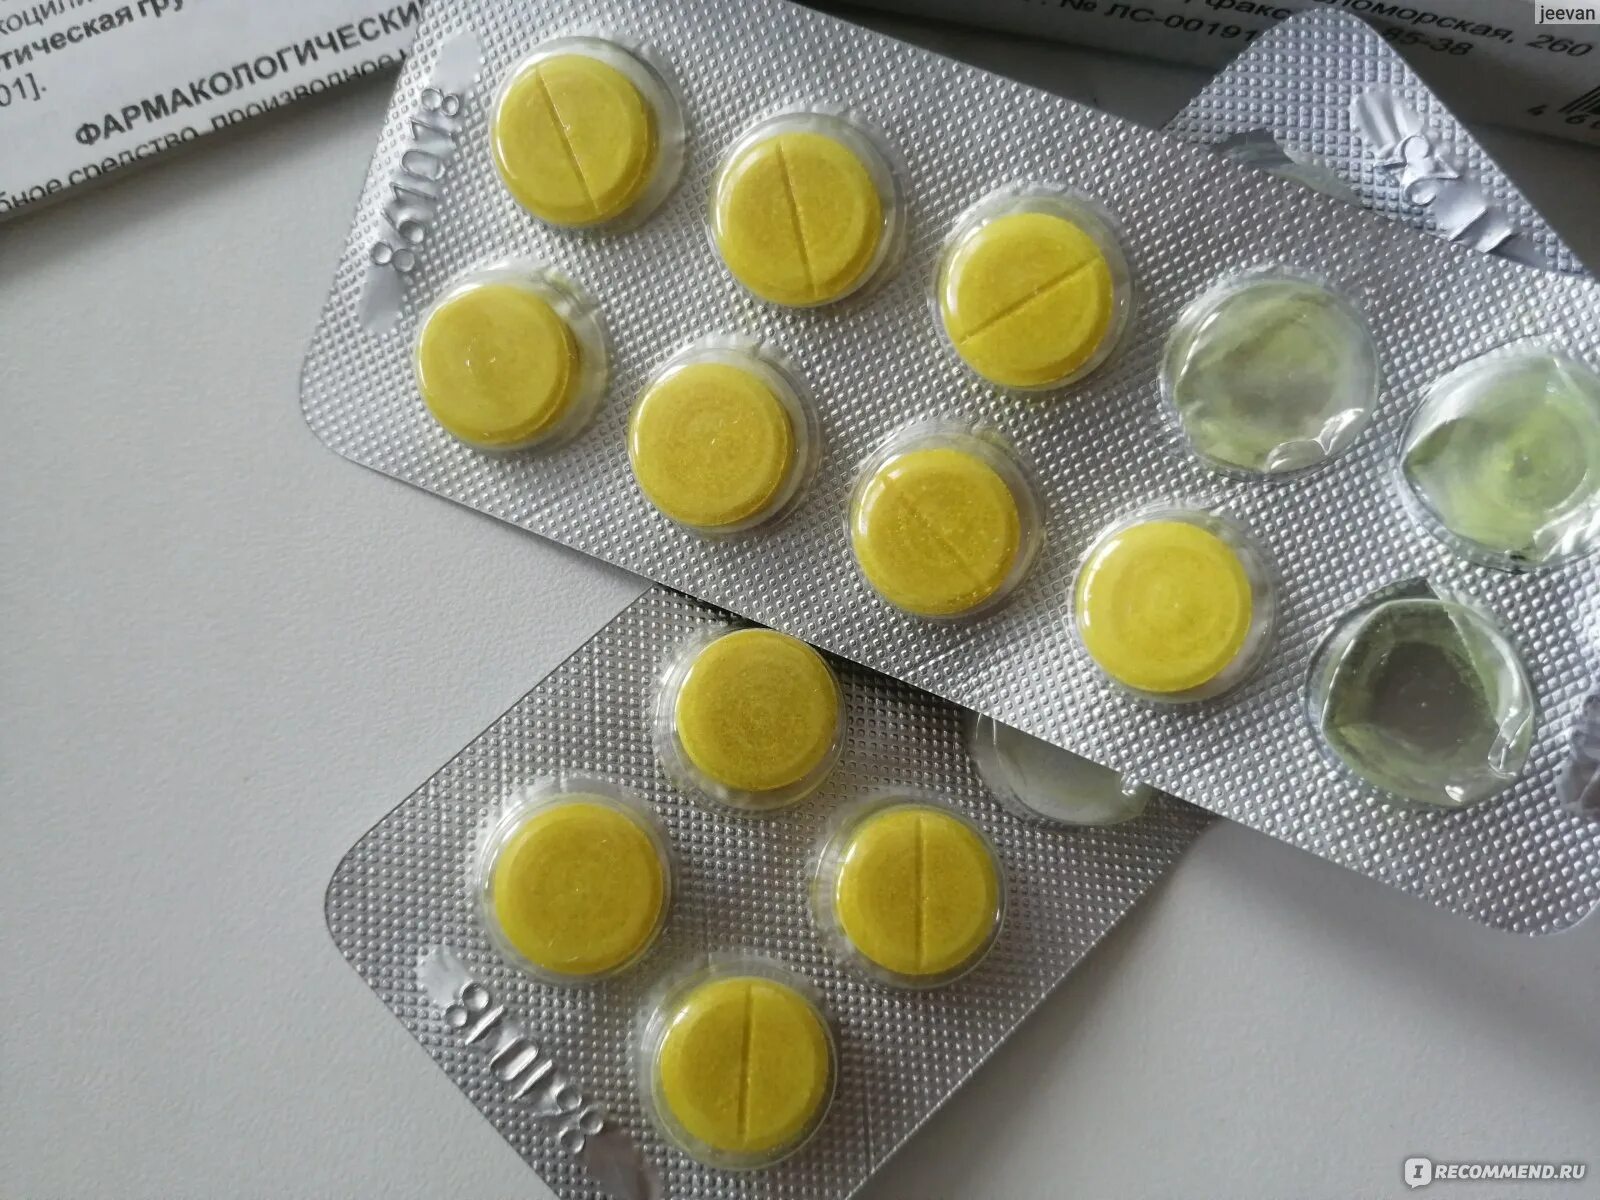 Фурацилин в пакетиках. Фурацилин таб. Жёлтые таблетки фурацилин. Антидепрессанты фурацилин. Желтые таблетки для полоскания фурацилин.